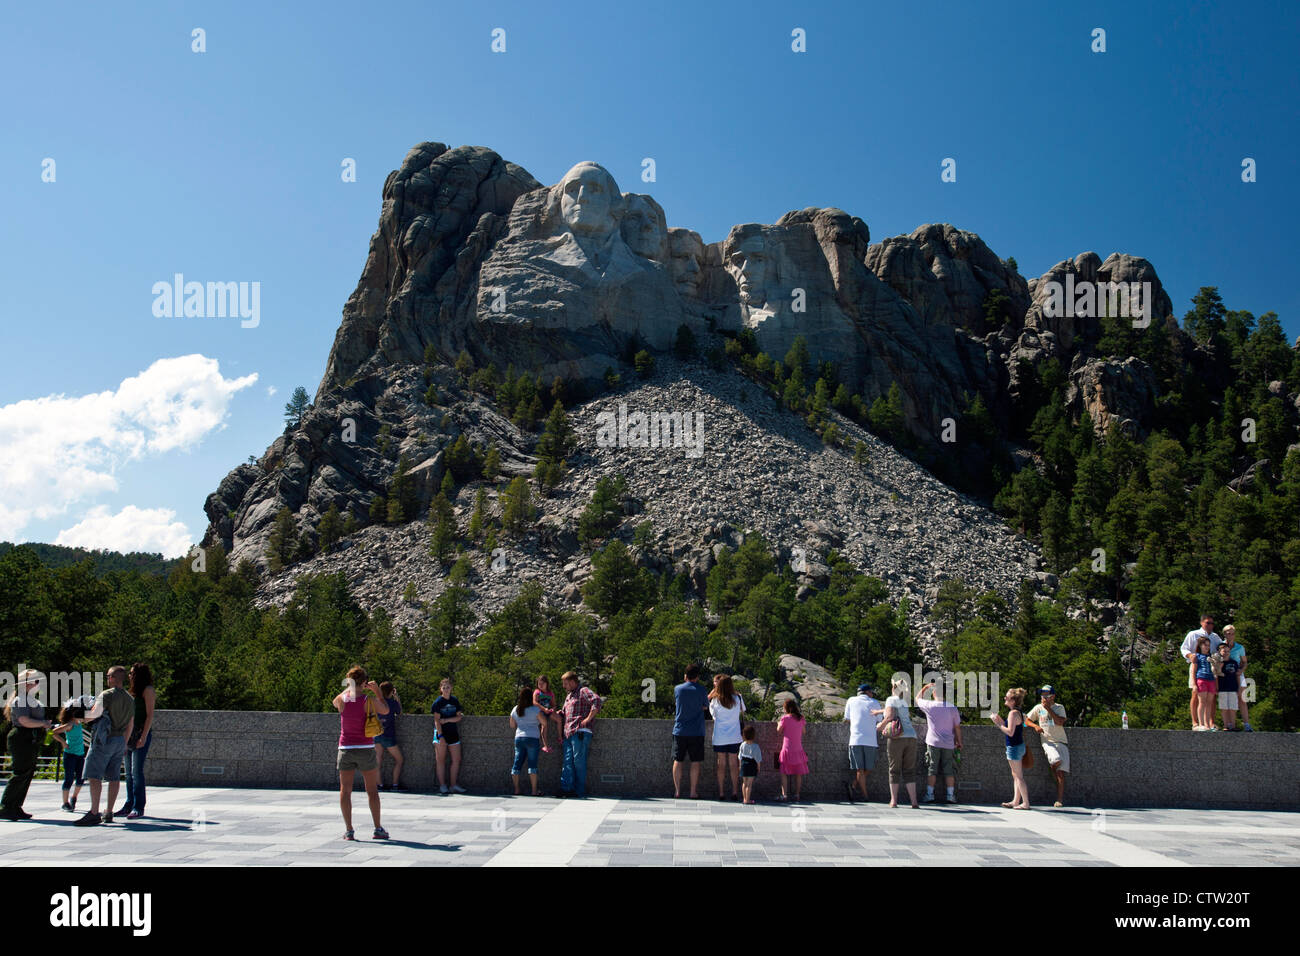 Les touristes voir Mt. Rushmore de la principale plate-forme de visualisation, Monument National du Mont Rushmore, dans le Dakota du Sud, États-Unis d'Amérique Banque D'Images